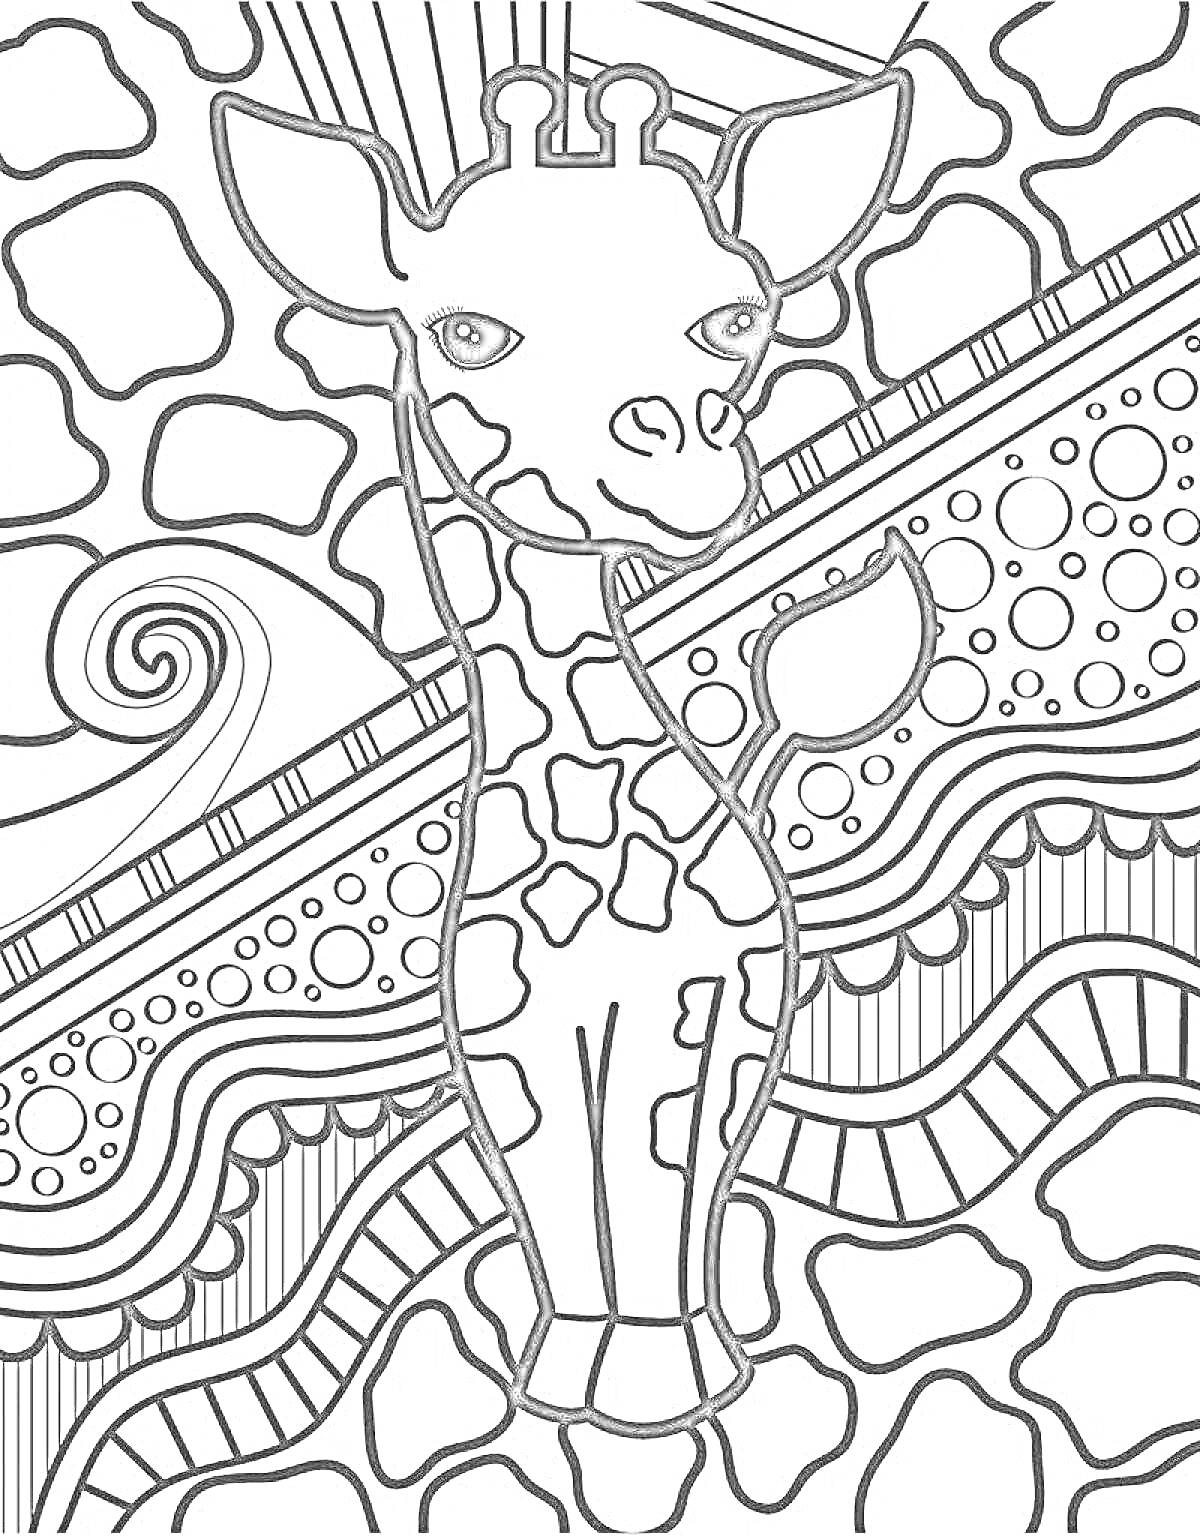 Раскраска Жираф на фоне зендудл узоров с волнистыми линиями, кругами и прямыми линиями